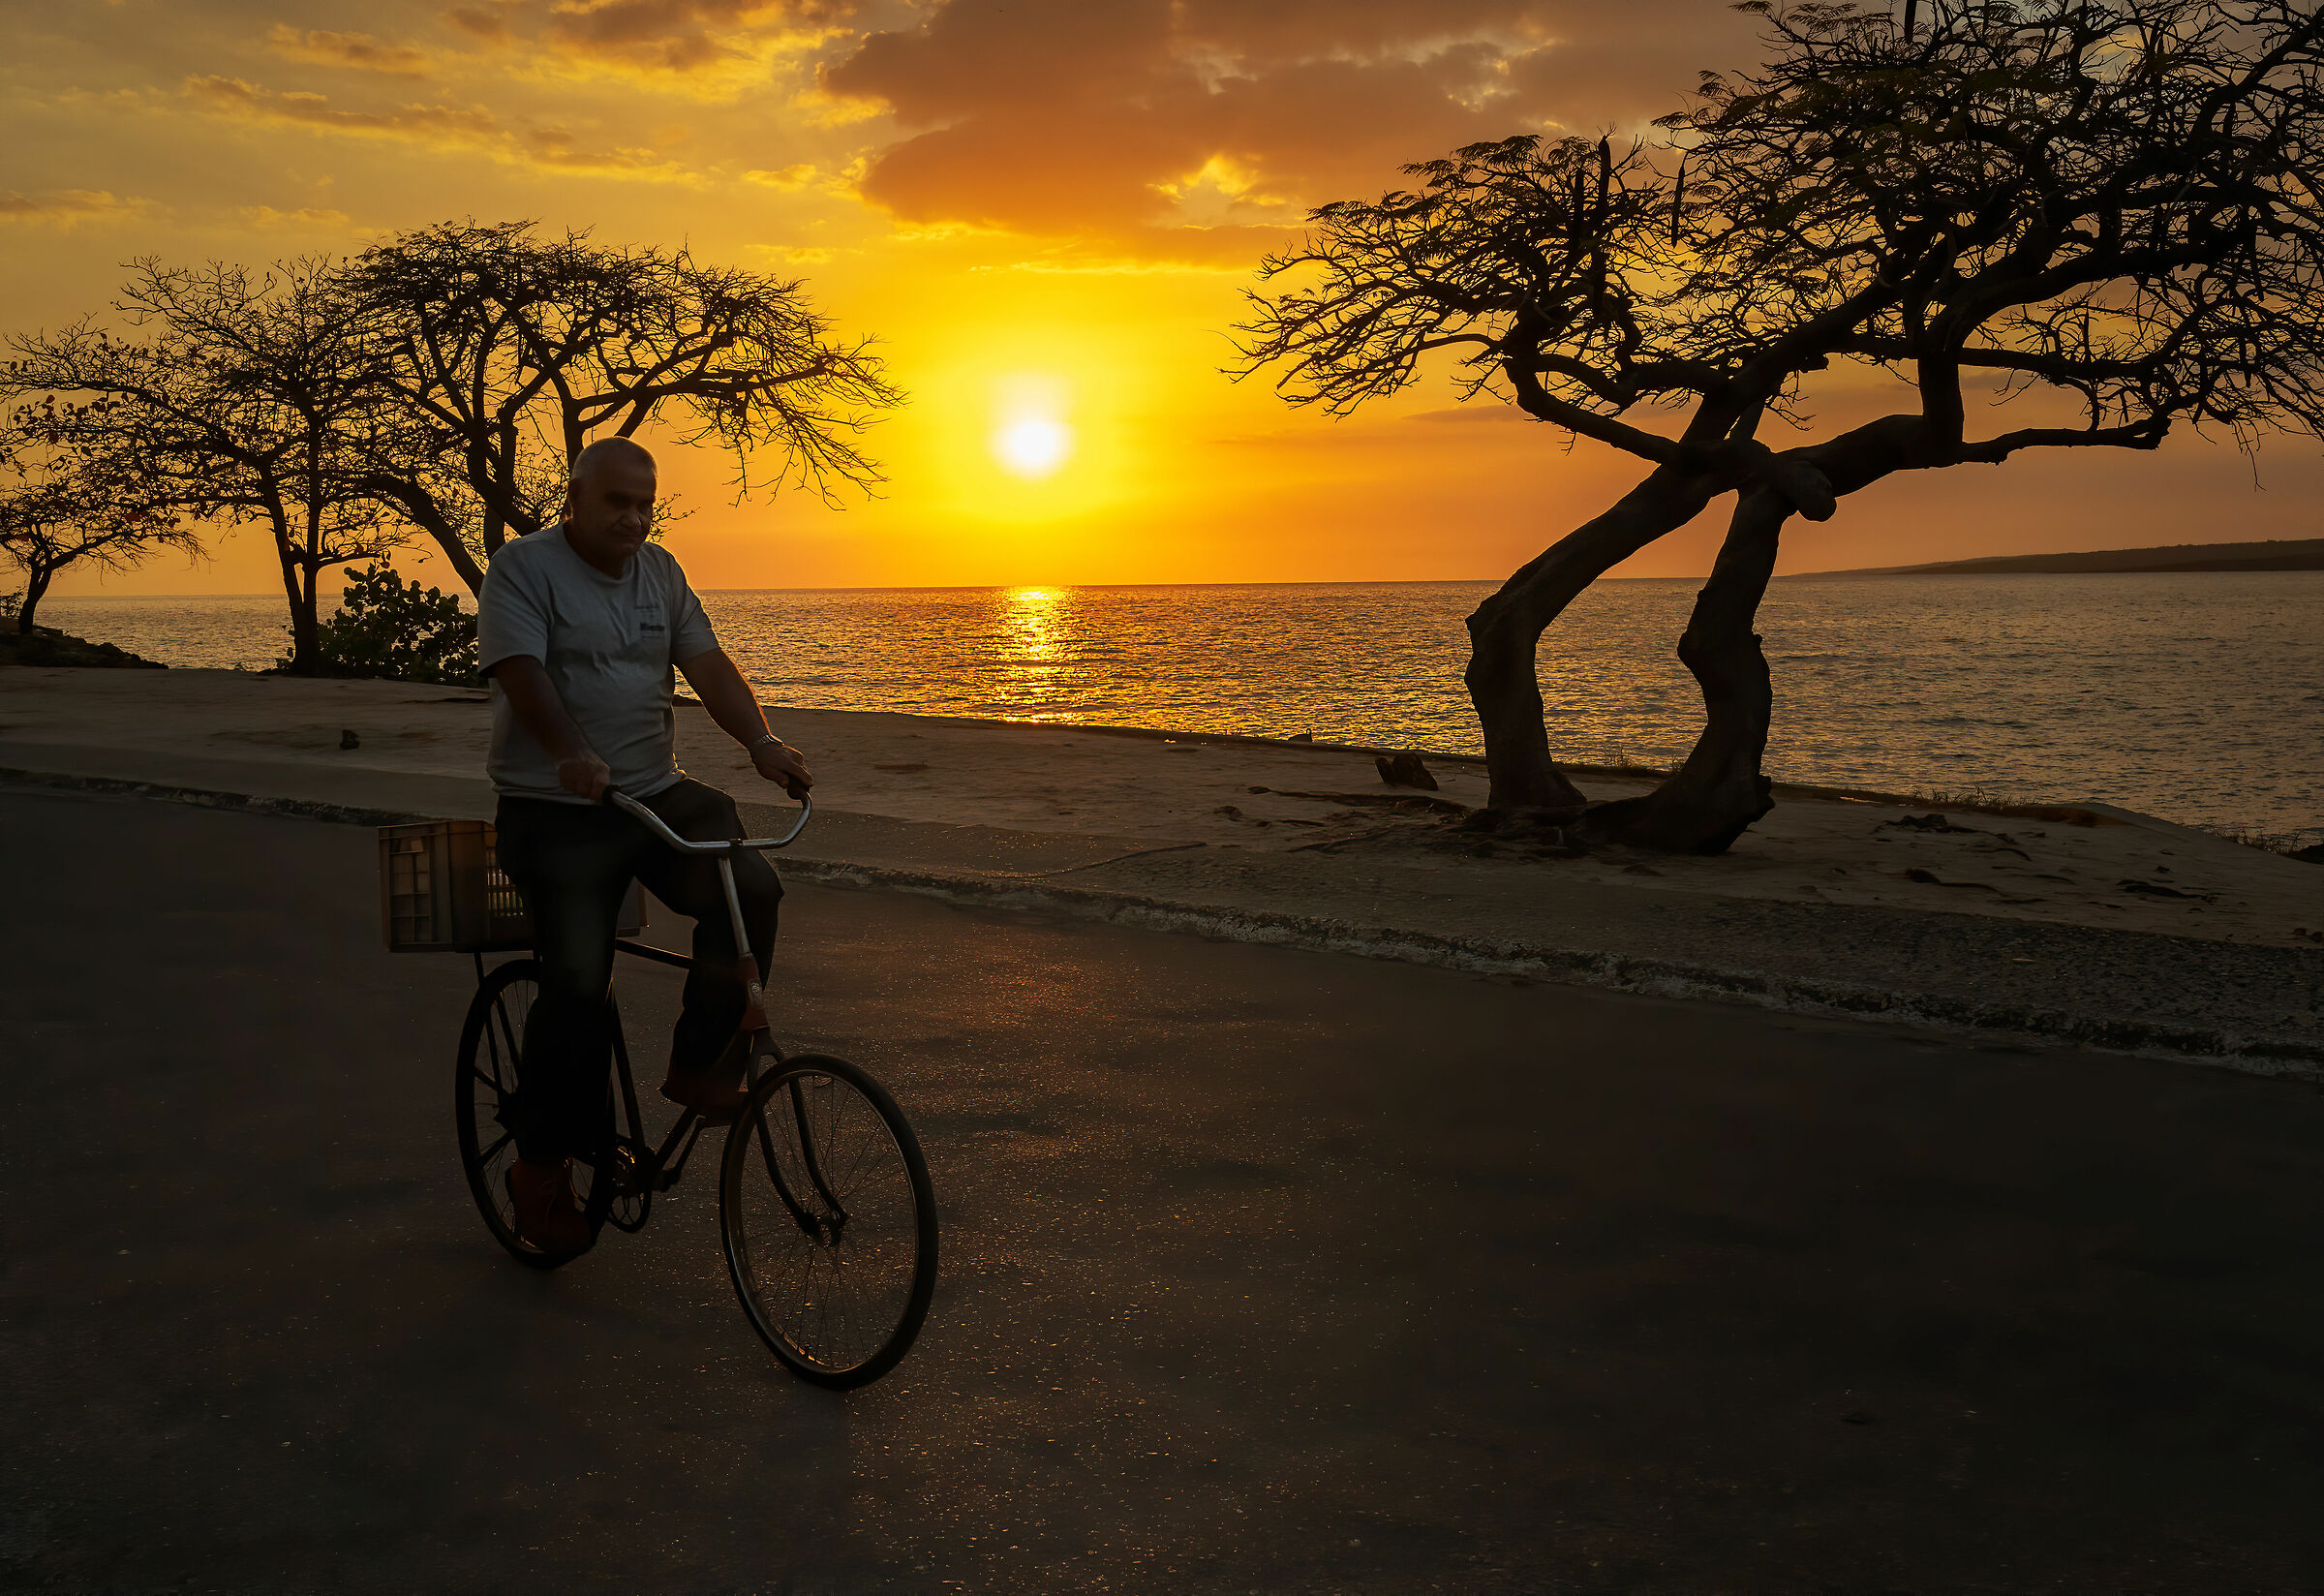 Sunset in Cuba...